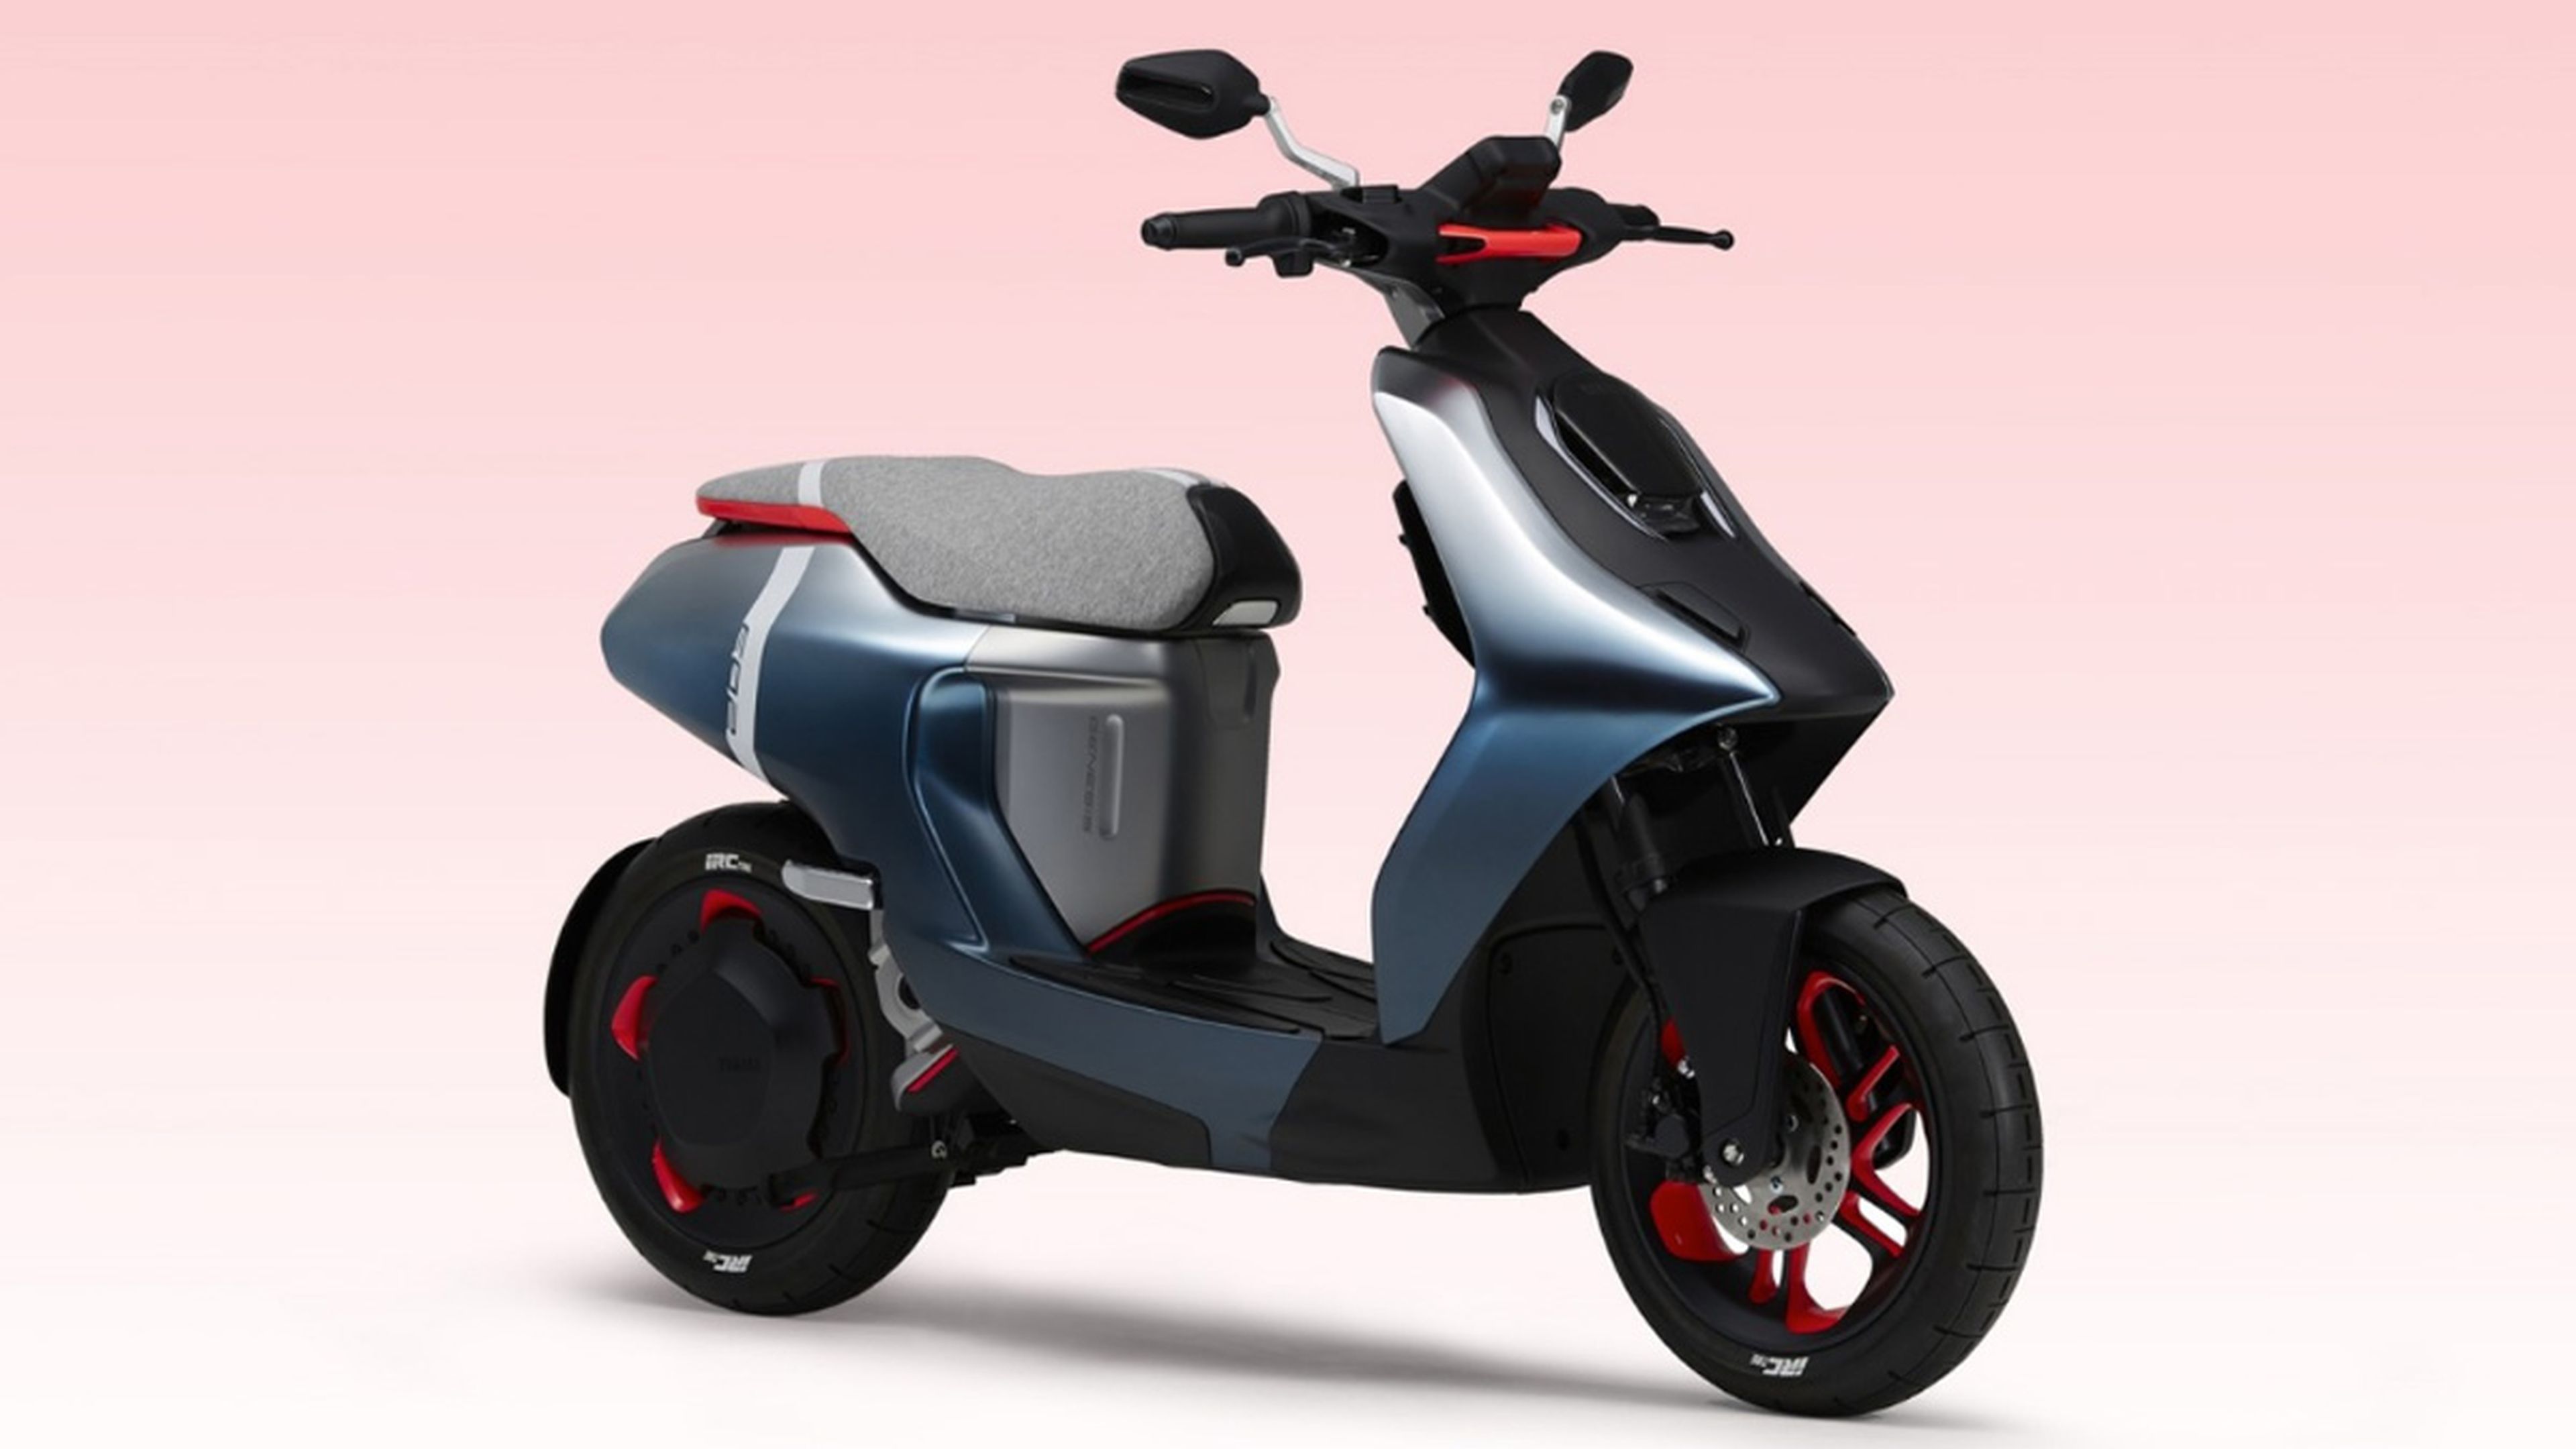 Yamaha muestra al mundo un concepto de moto eléctrica capaz de